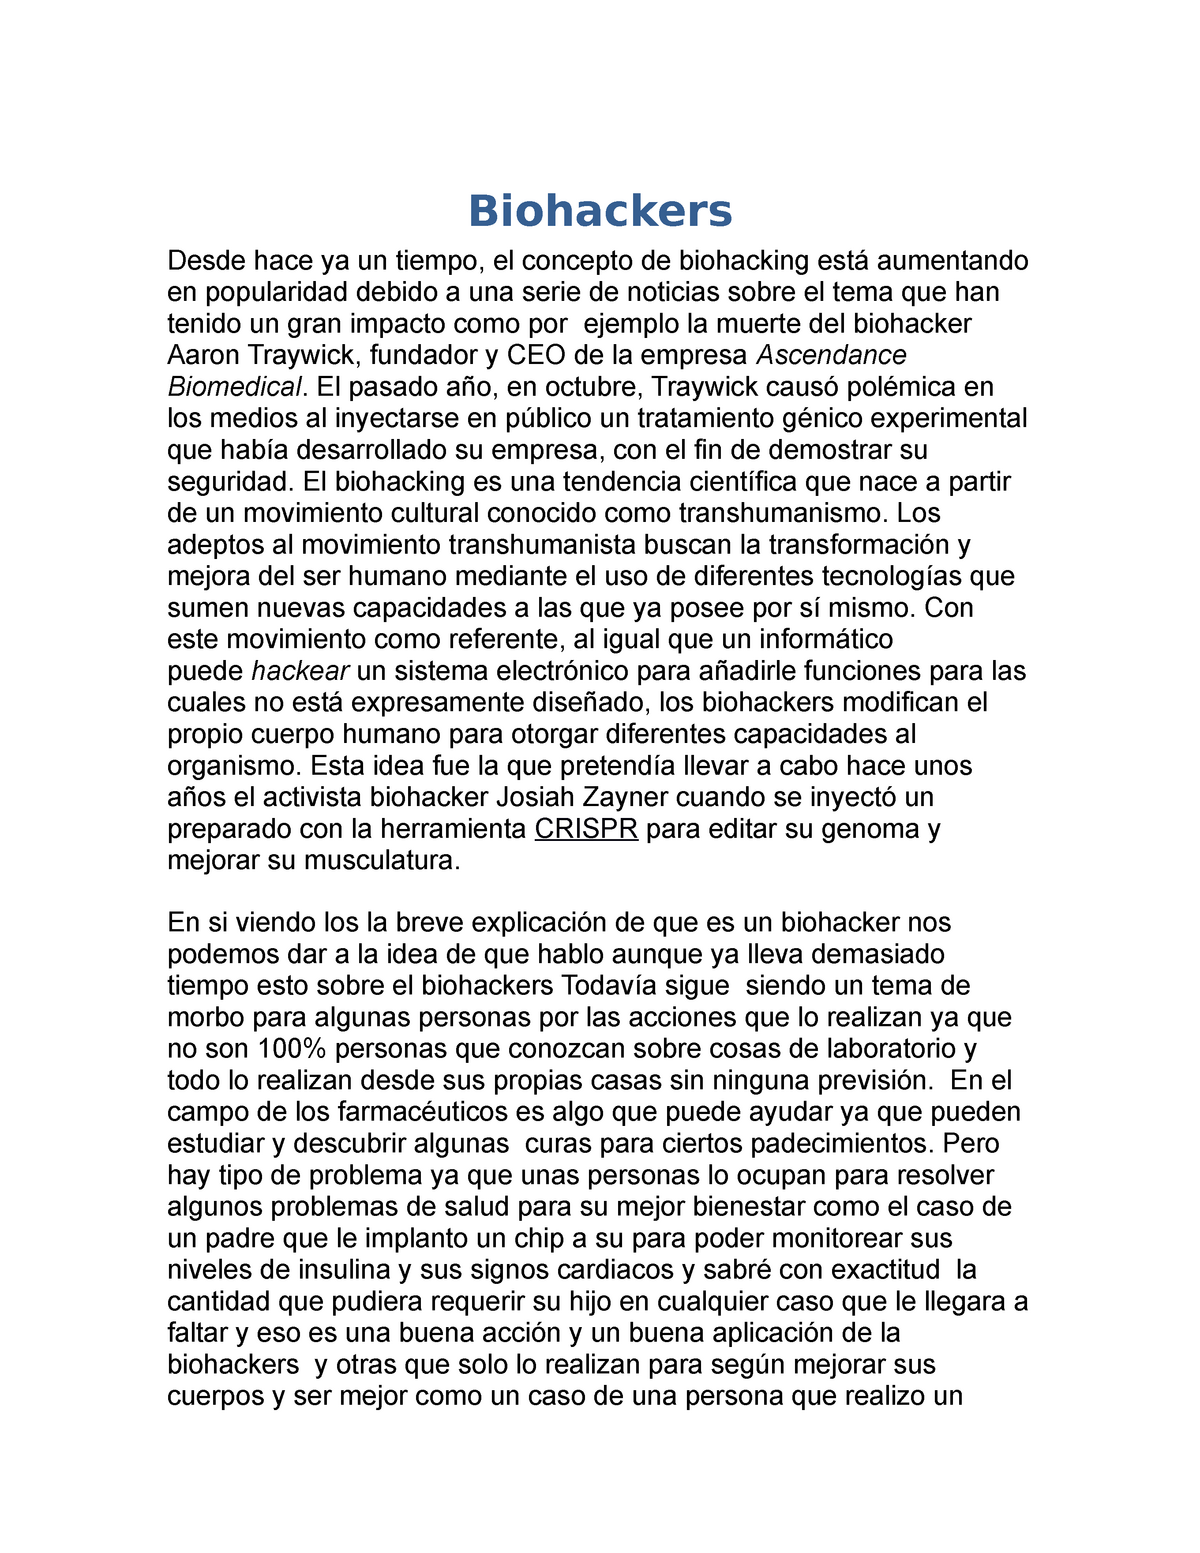 Biohackers - Nota: 8 - Biohackers Desde hace ya un tiempo, el concepto ...